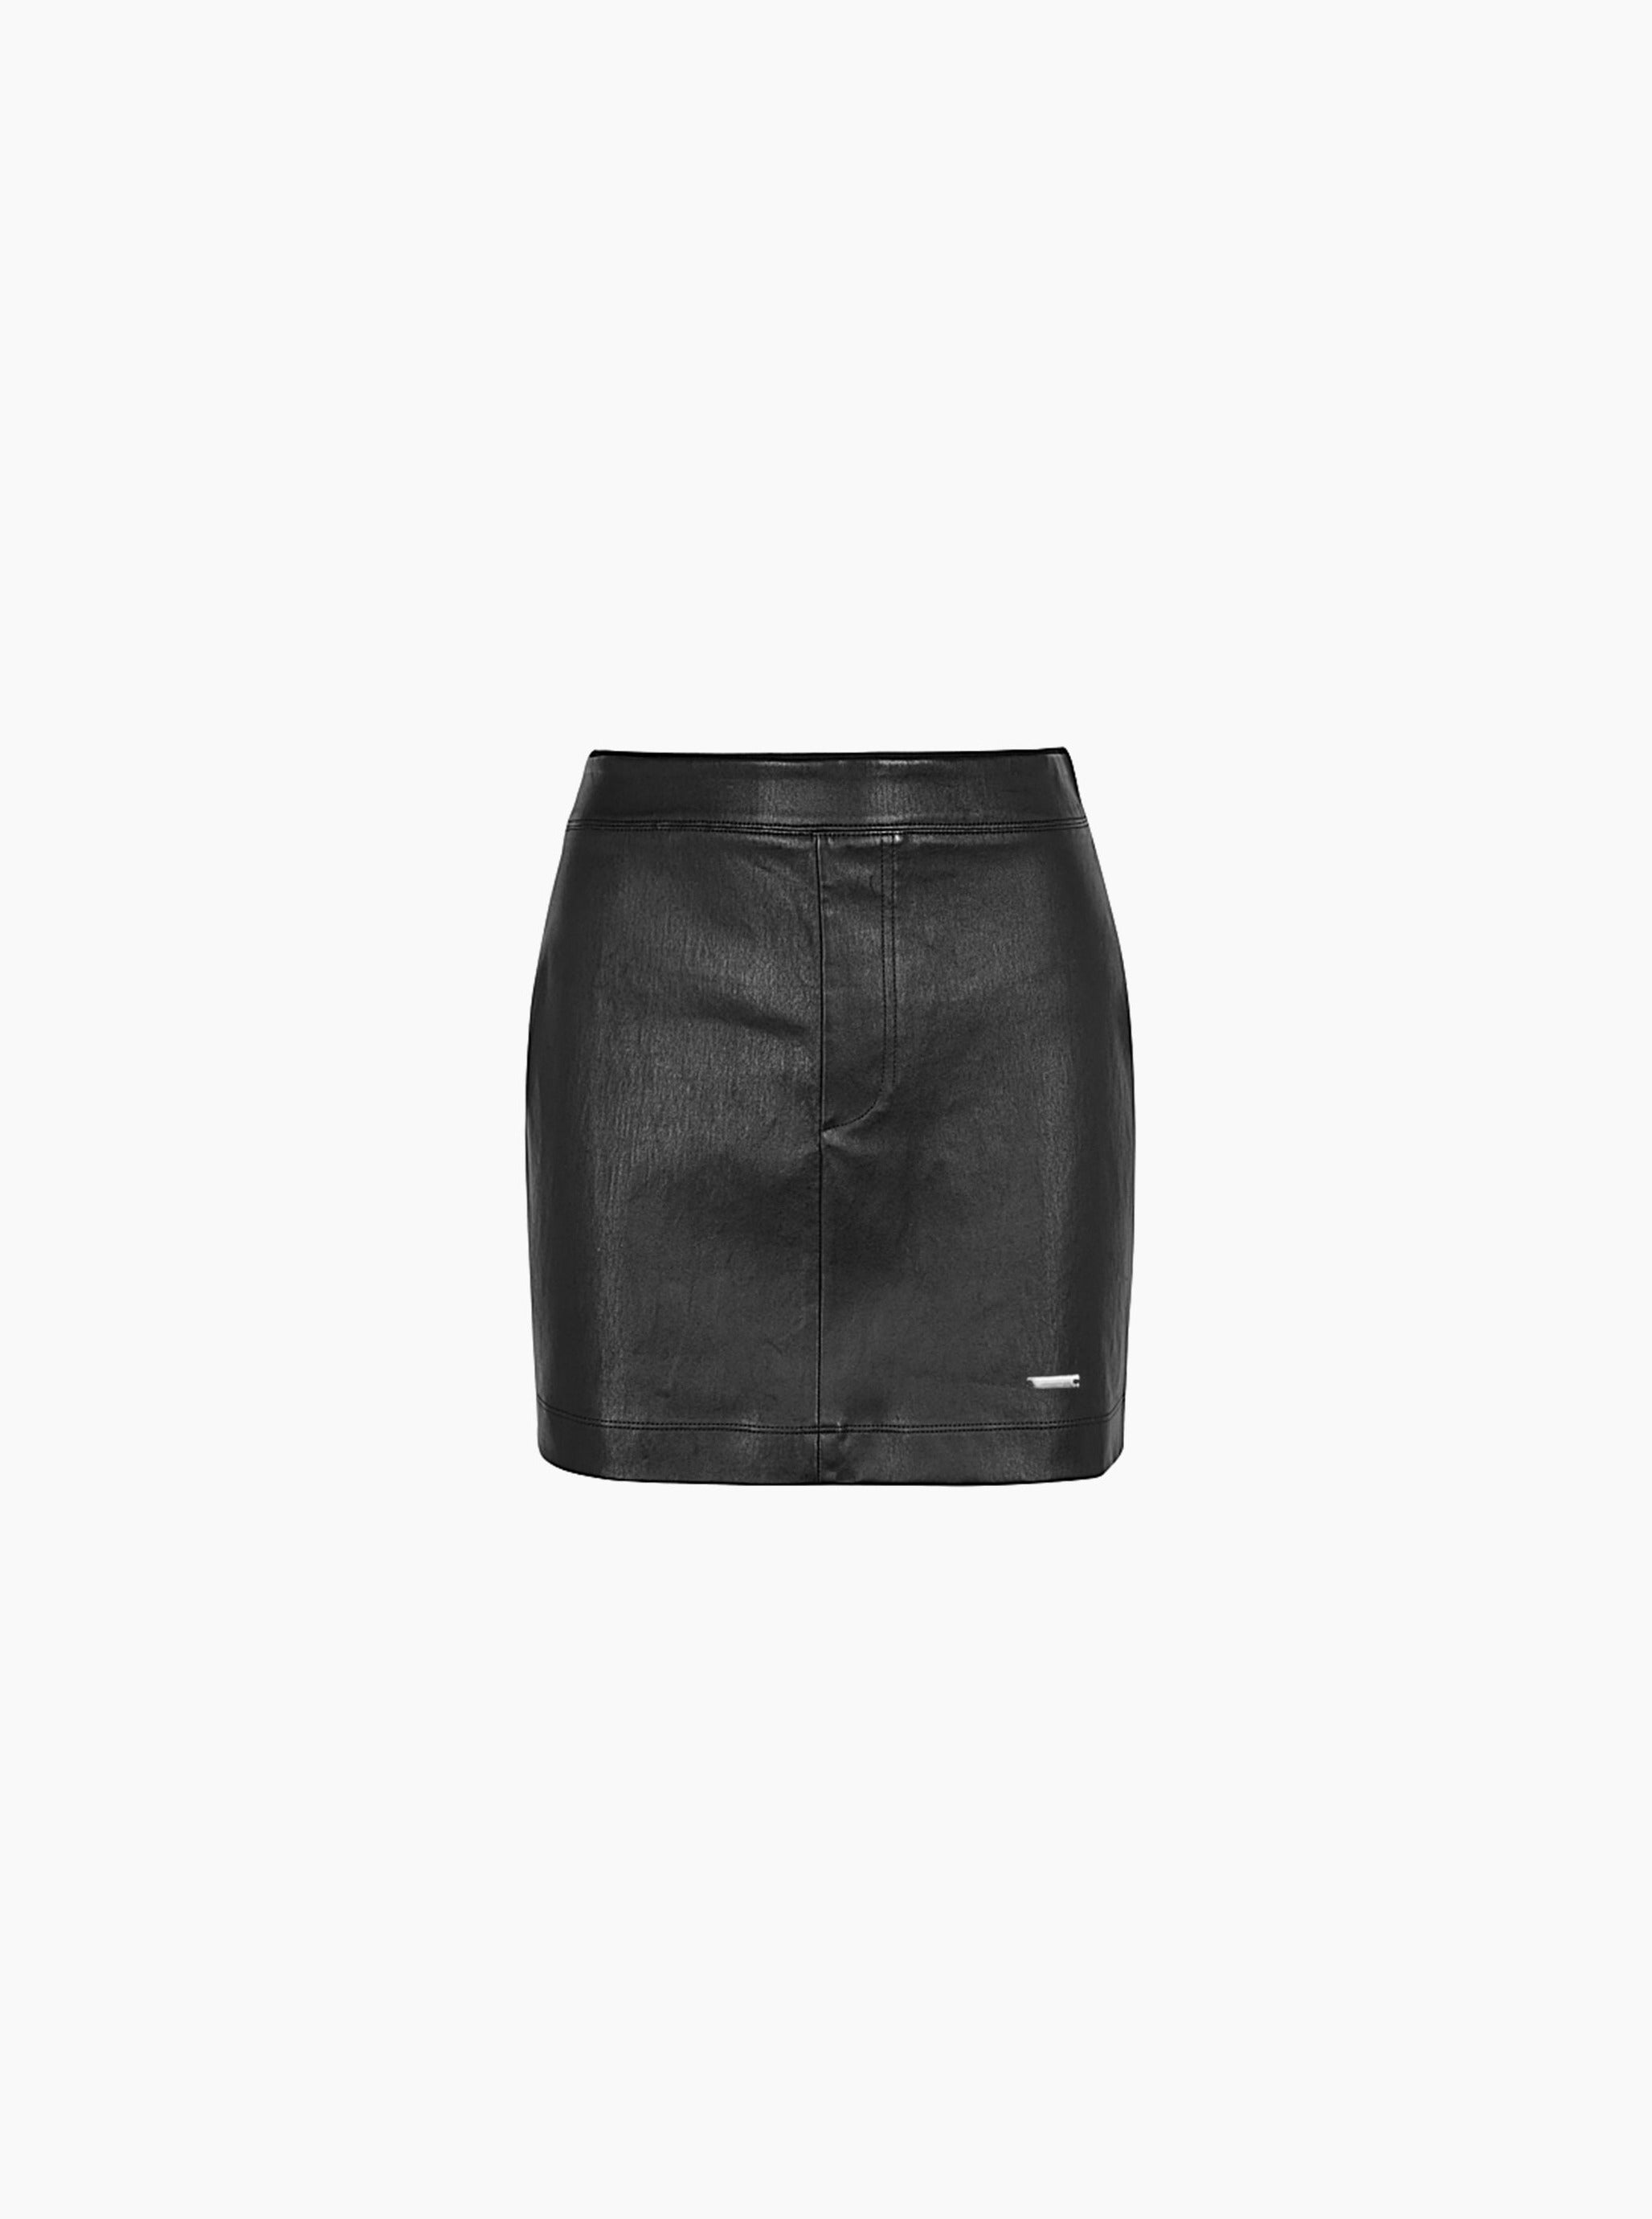 Sole et. Al Leather Skirt